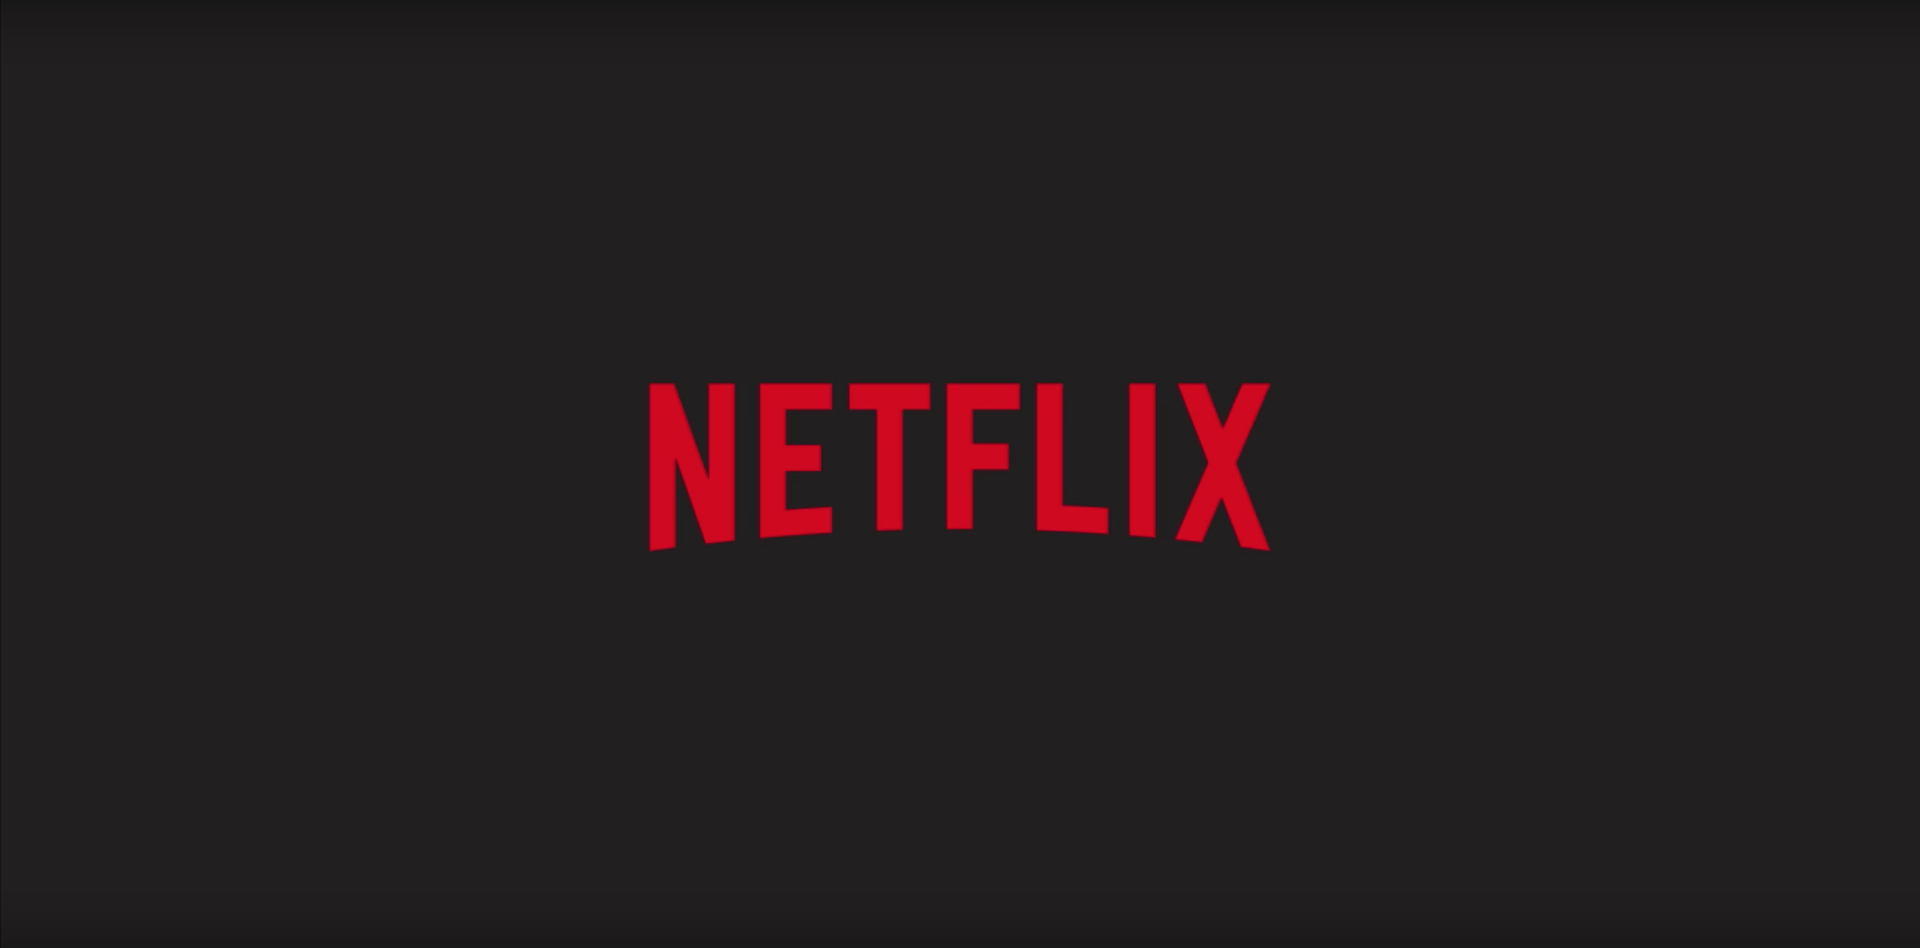 Nova tecnologia pode acabar com compartilhamento de contas na Netflix